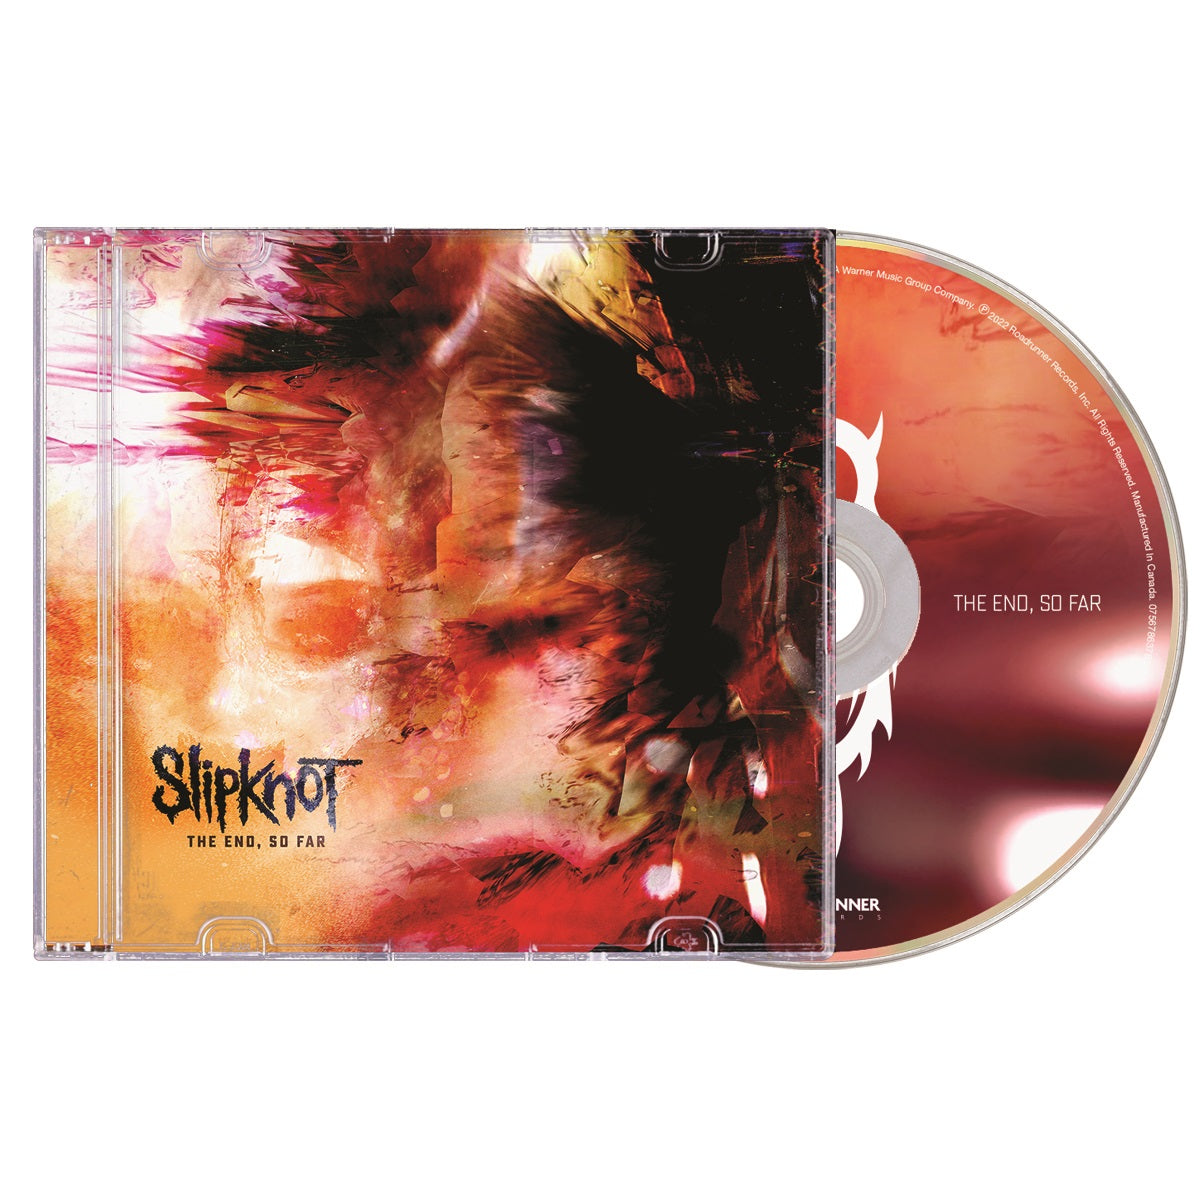 Slipknot "The End, So Far" CD